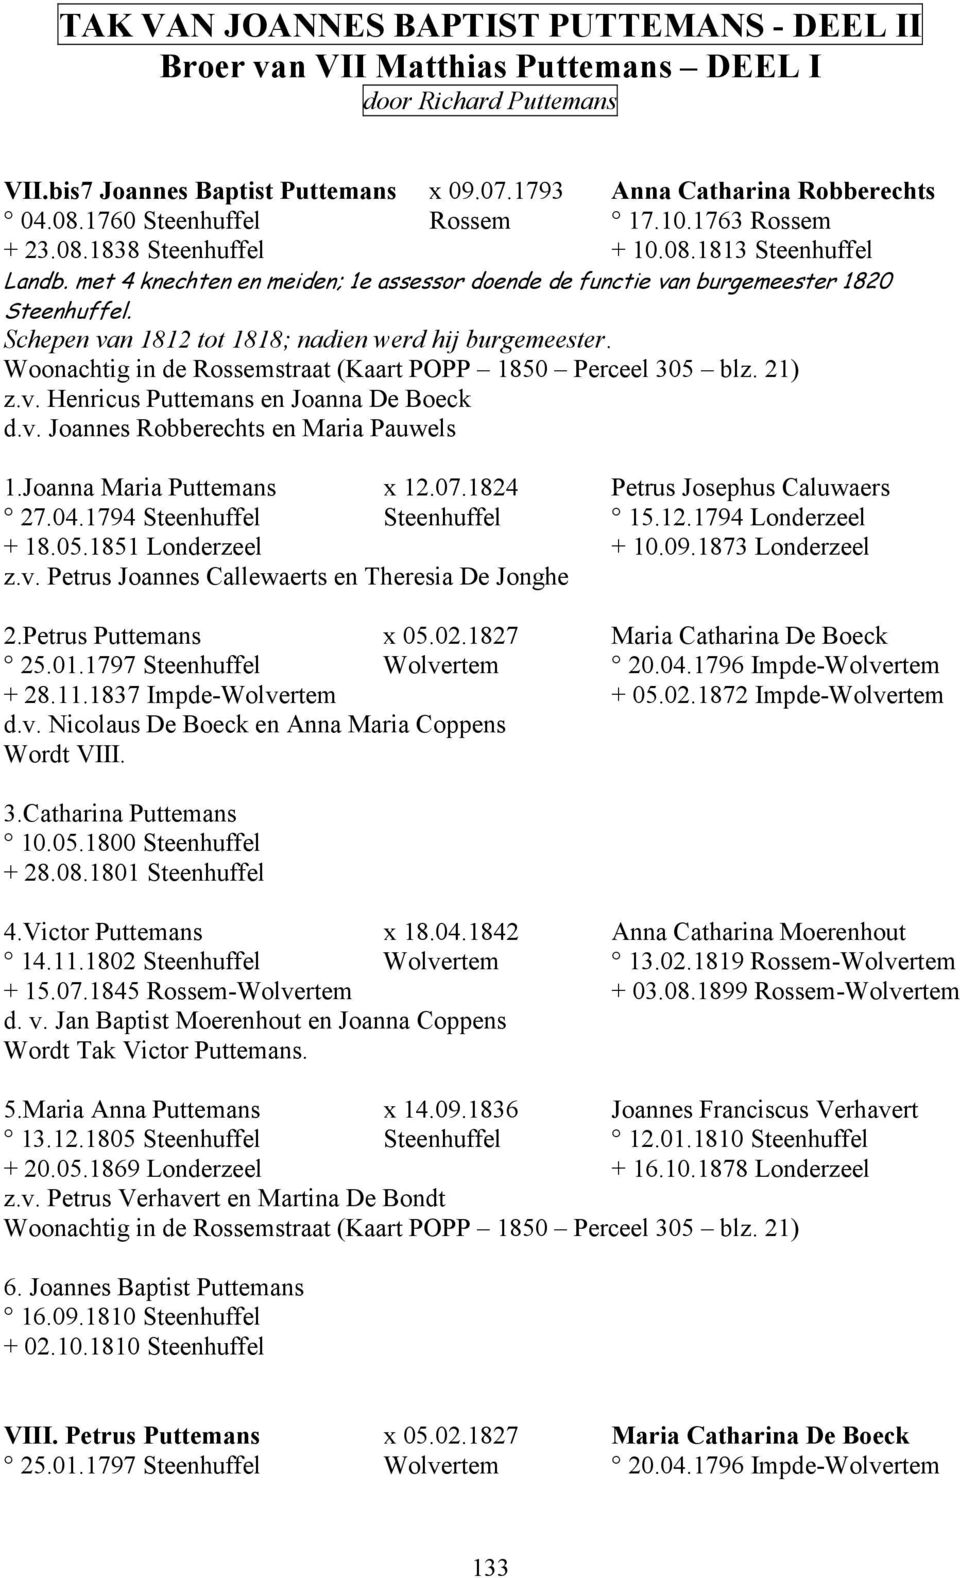 Schepen van 1812 tot 1818; nadien werd hij burgemeester. Woonachtig in de Rossemstraat (Kaart POPP 1850 Perceel 305 blz. 21) z.v. Henricus Puttemans en Joanna De Boeck d.v. Joannes Robberechts en Maria Pauwels 1.